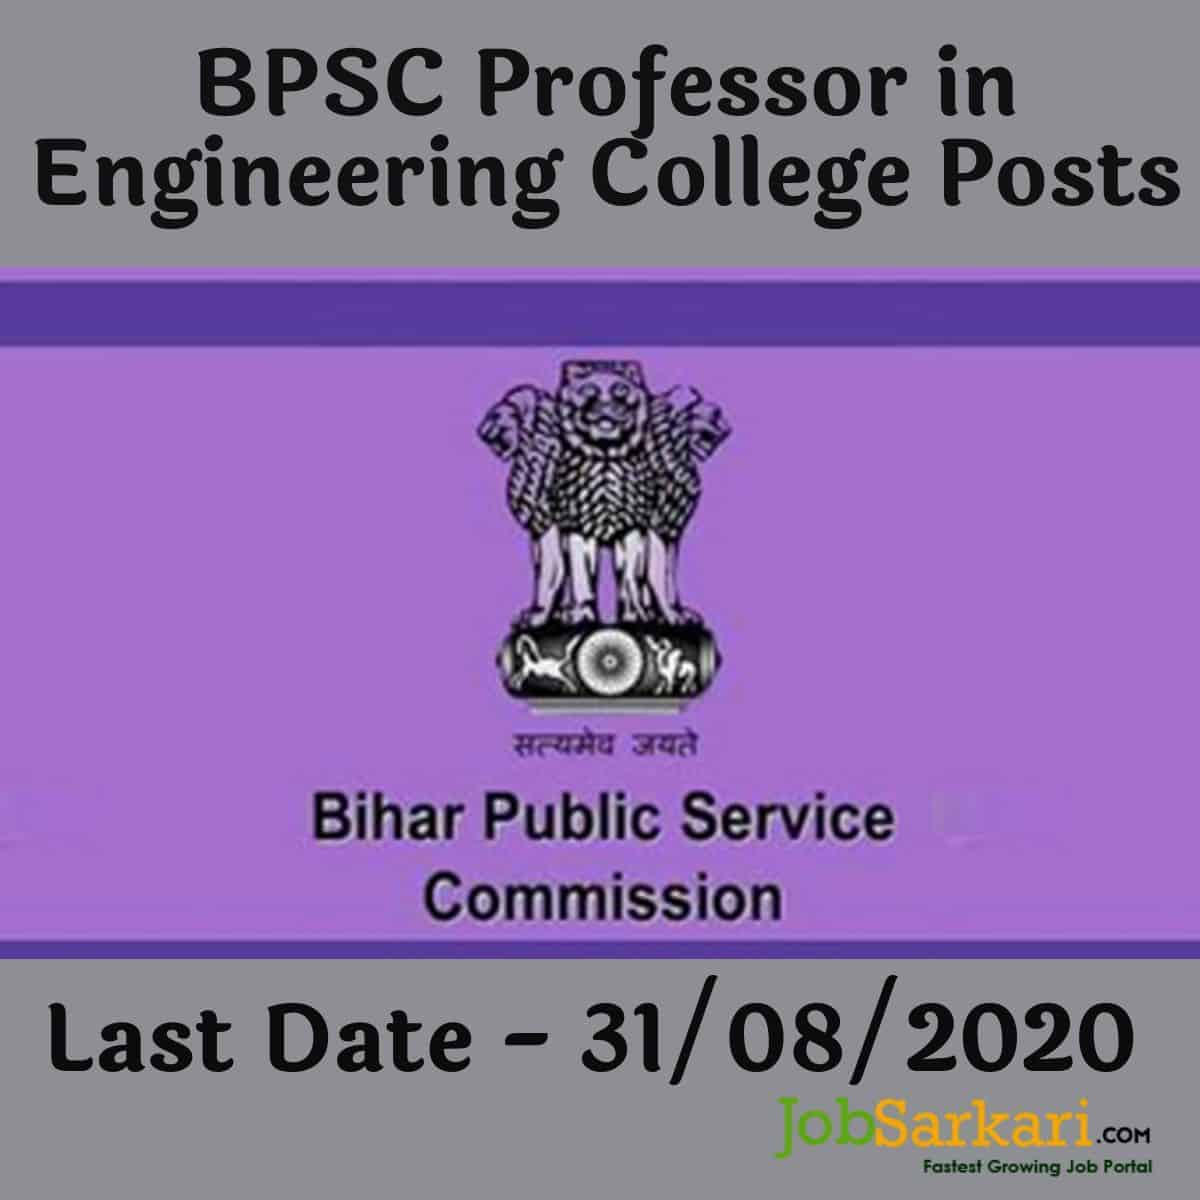 BPSC Professor in Engineering College Posts